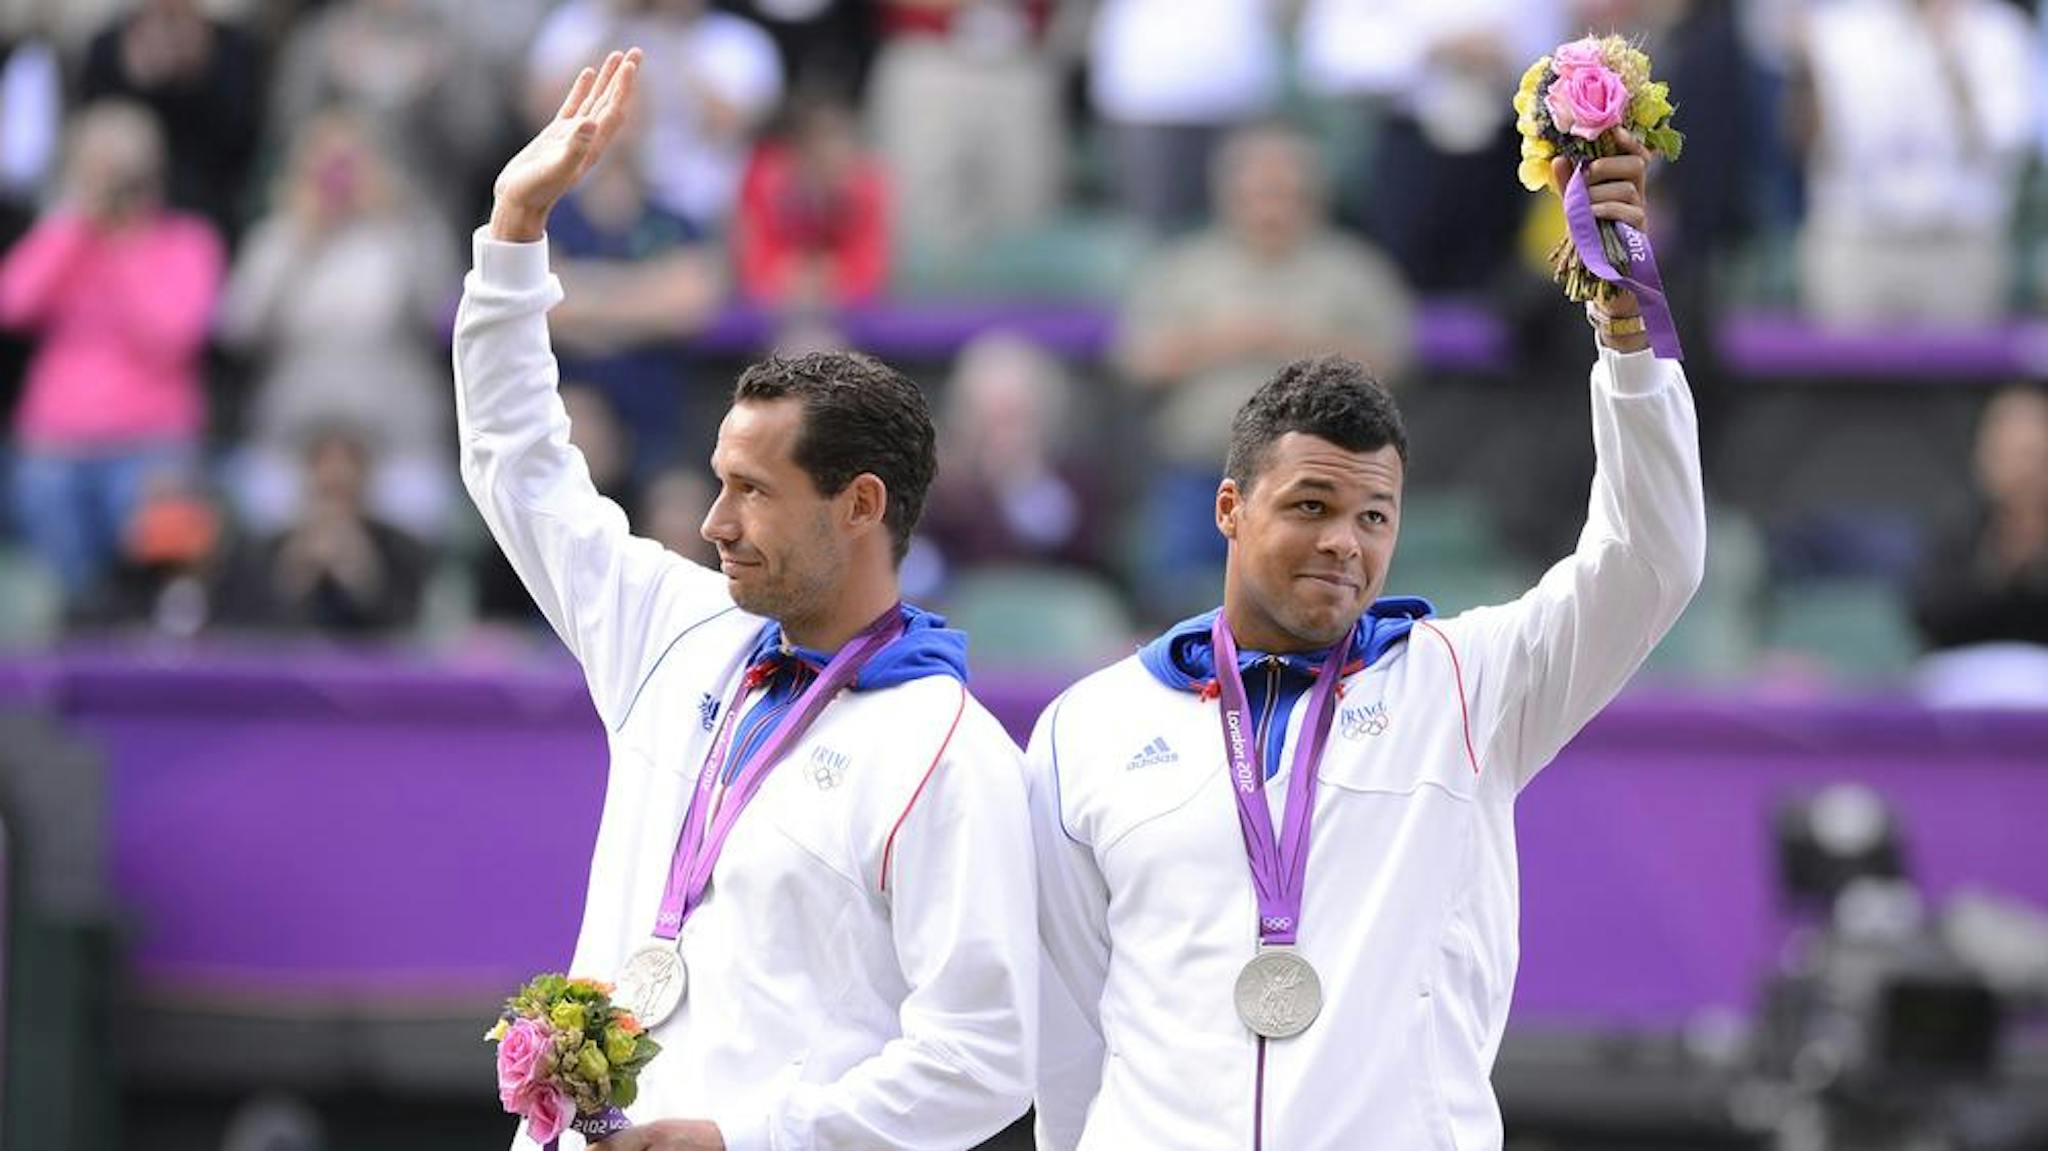 Une médaille olympique en argent qui marque encore plus l'impact de Jo sous le maillot France.